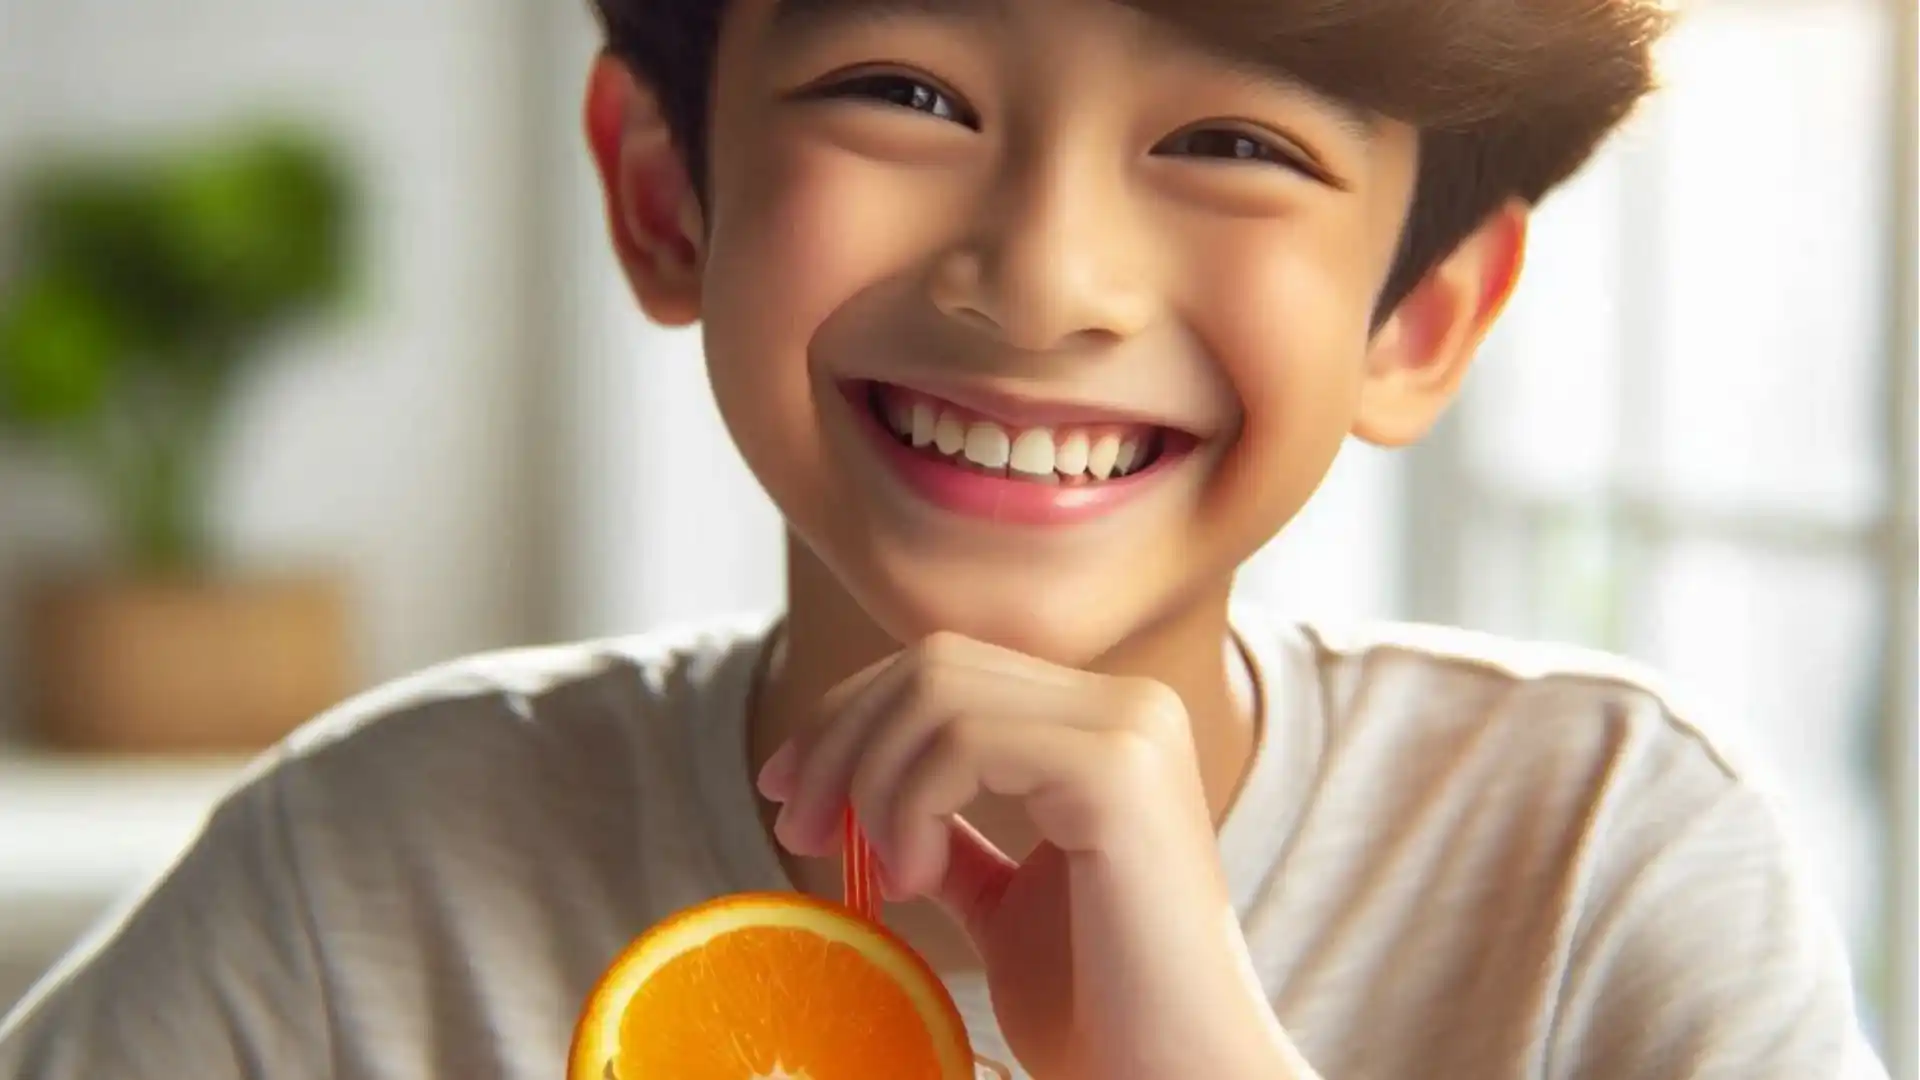 Niño sonriente bebiendo un vaso de jugo de naranja, simbolizando la nutrición y salud proporcionada por FitLine PowerCocktail Junior.